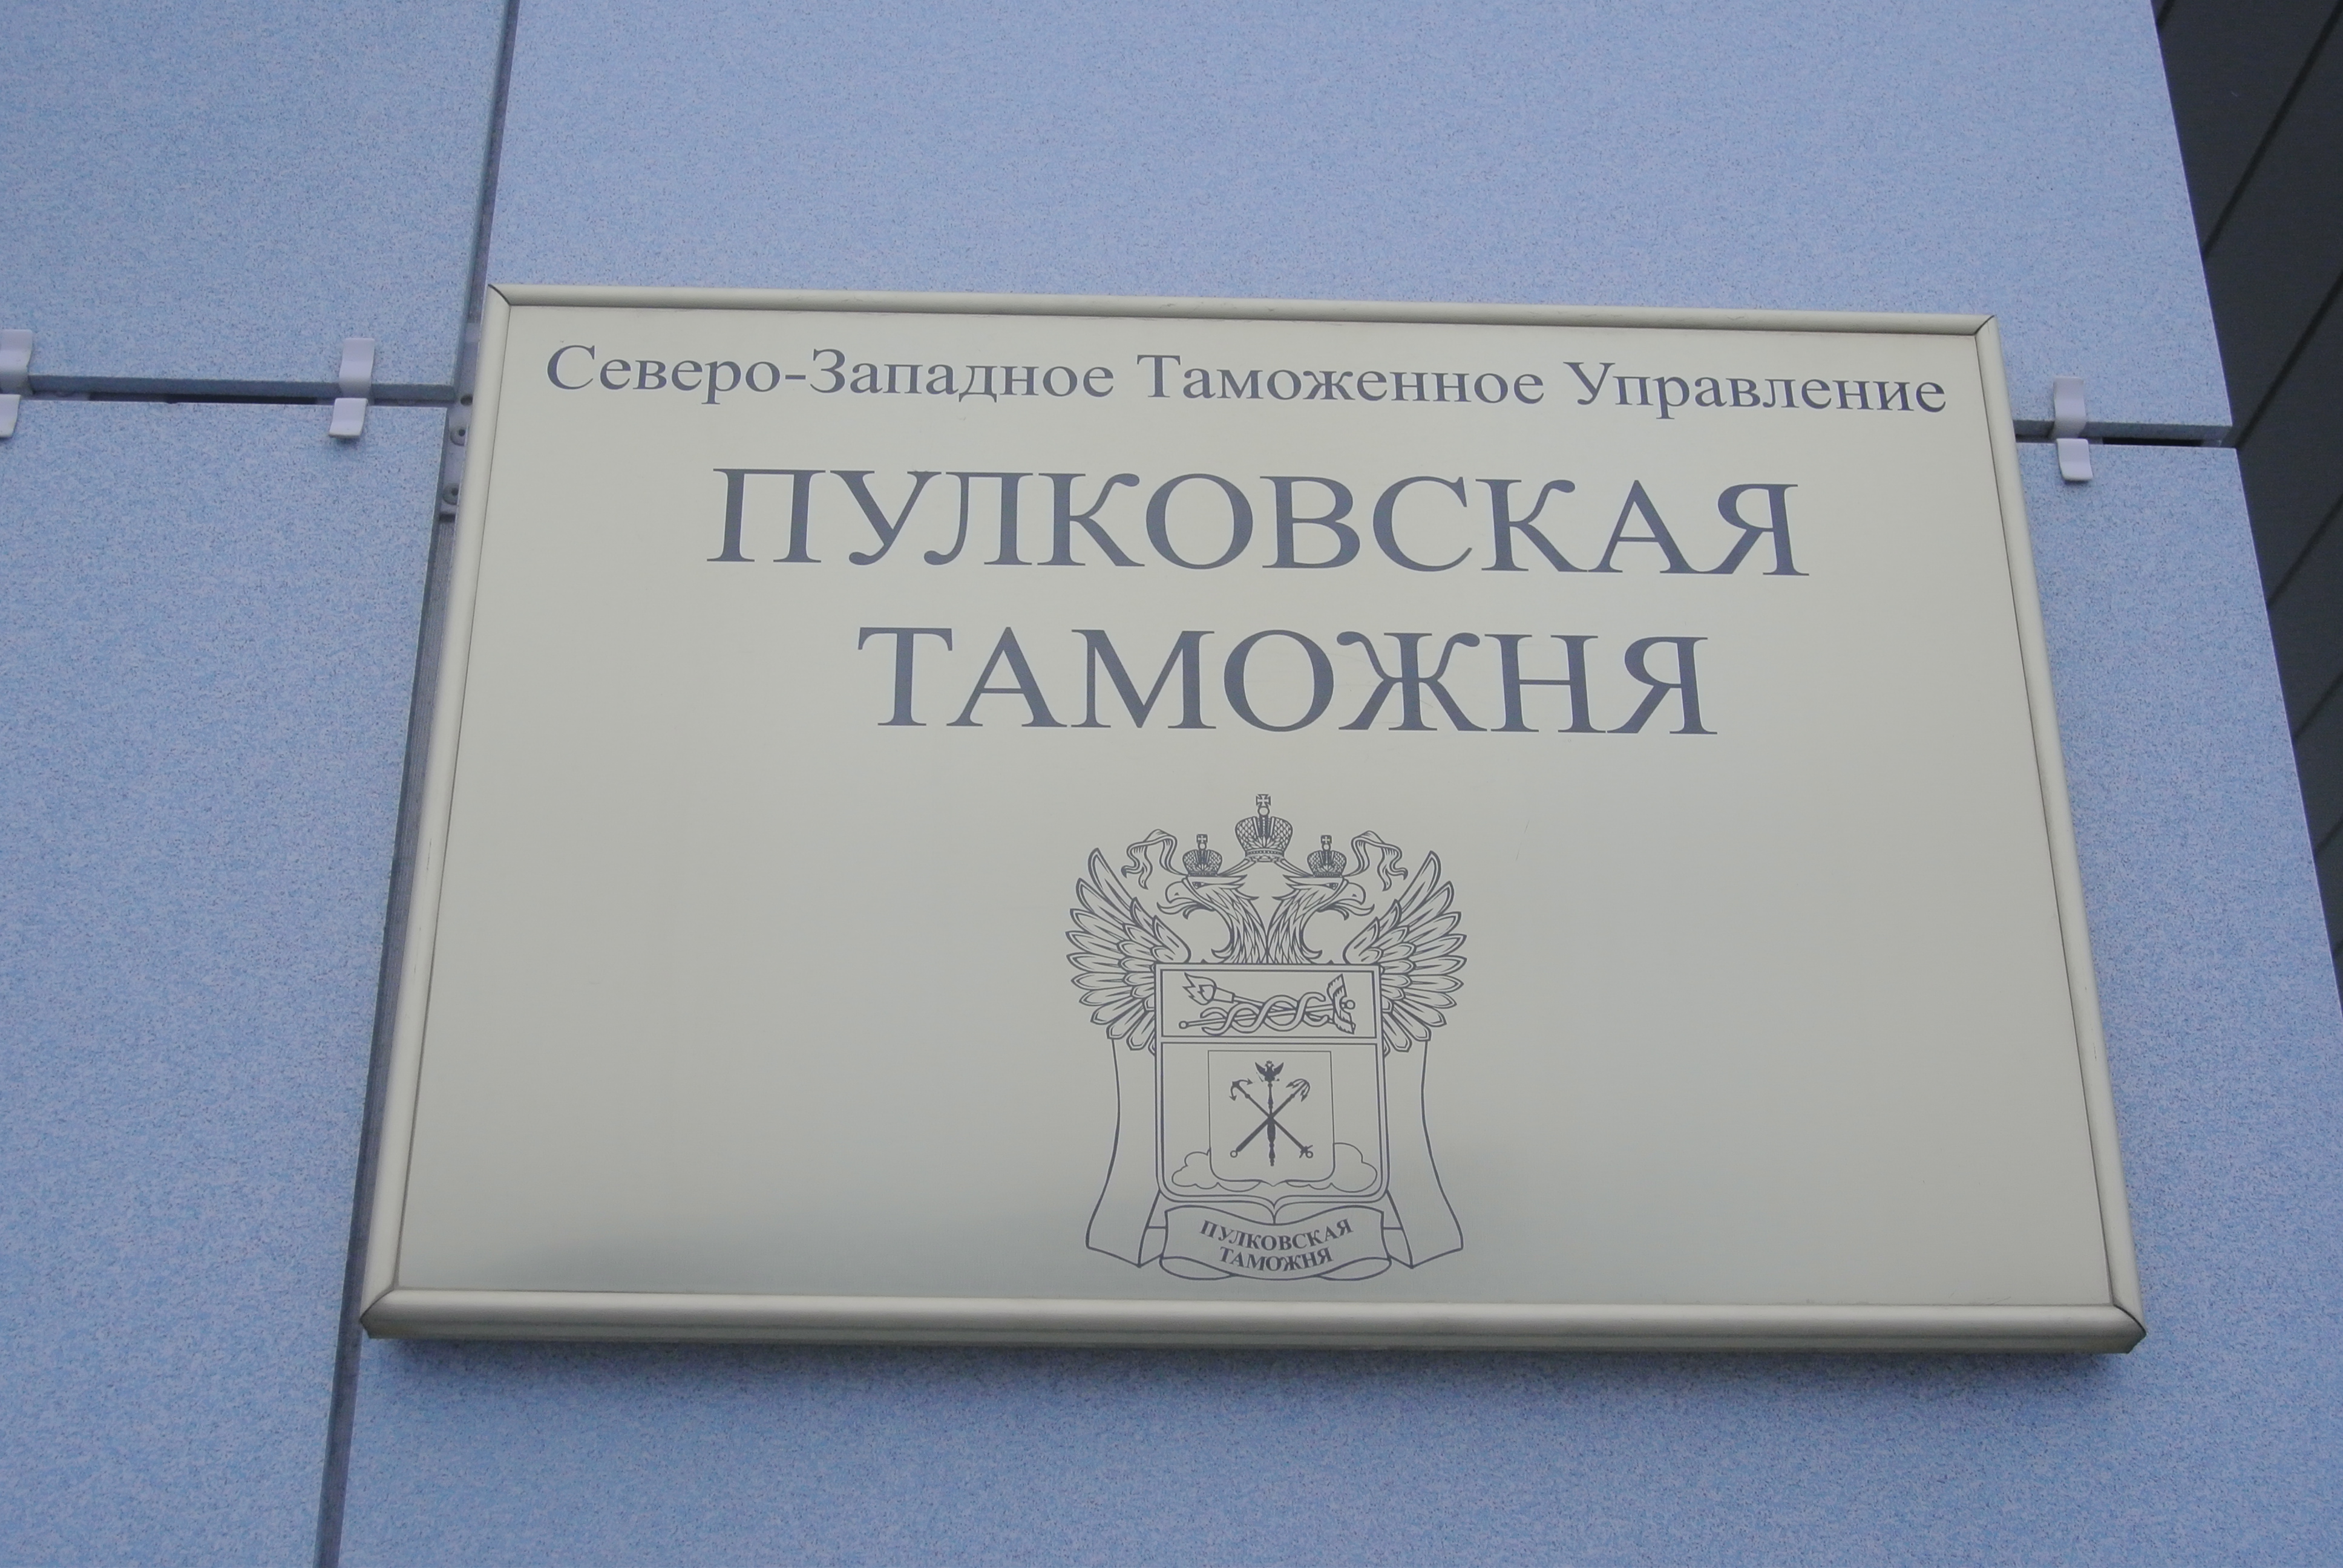 Столовое серебро до уголовного дела довело, но адвокаты уверены: действия Пулковской таможни незаконны